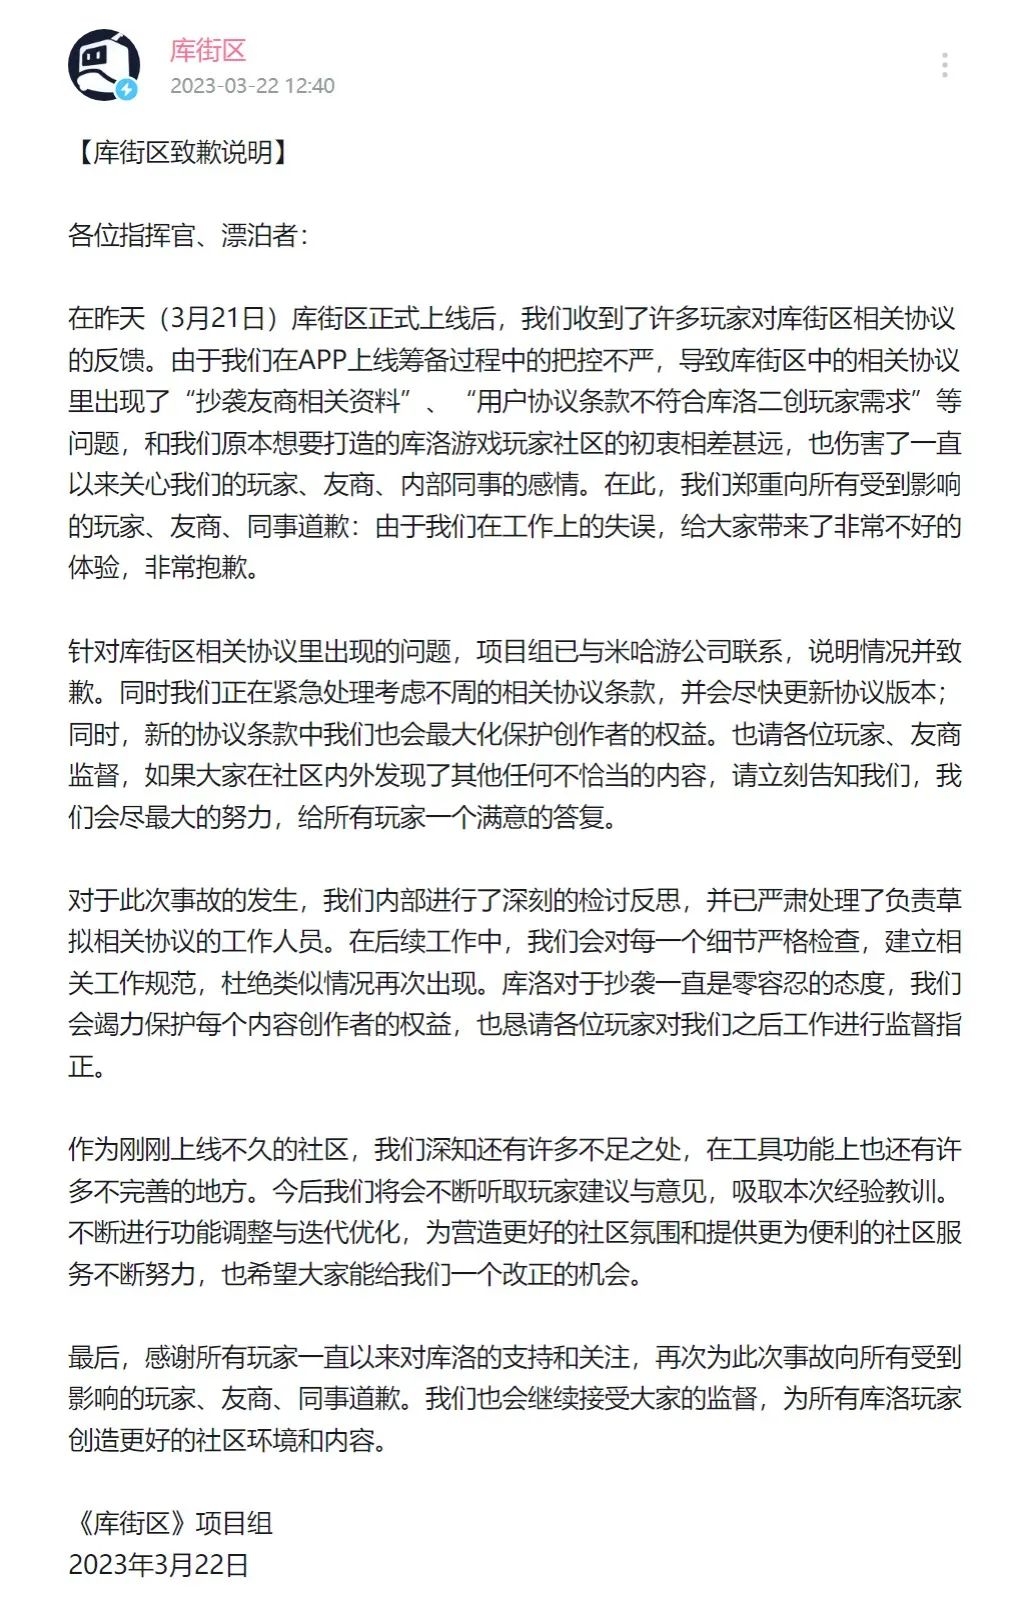 因用户协议涉嫌抄袭米哈游，库洛游戏“库街区”项目组公开道歉